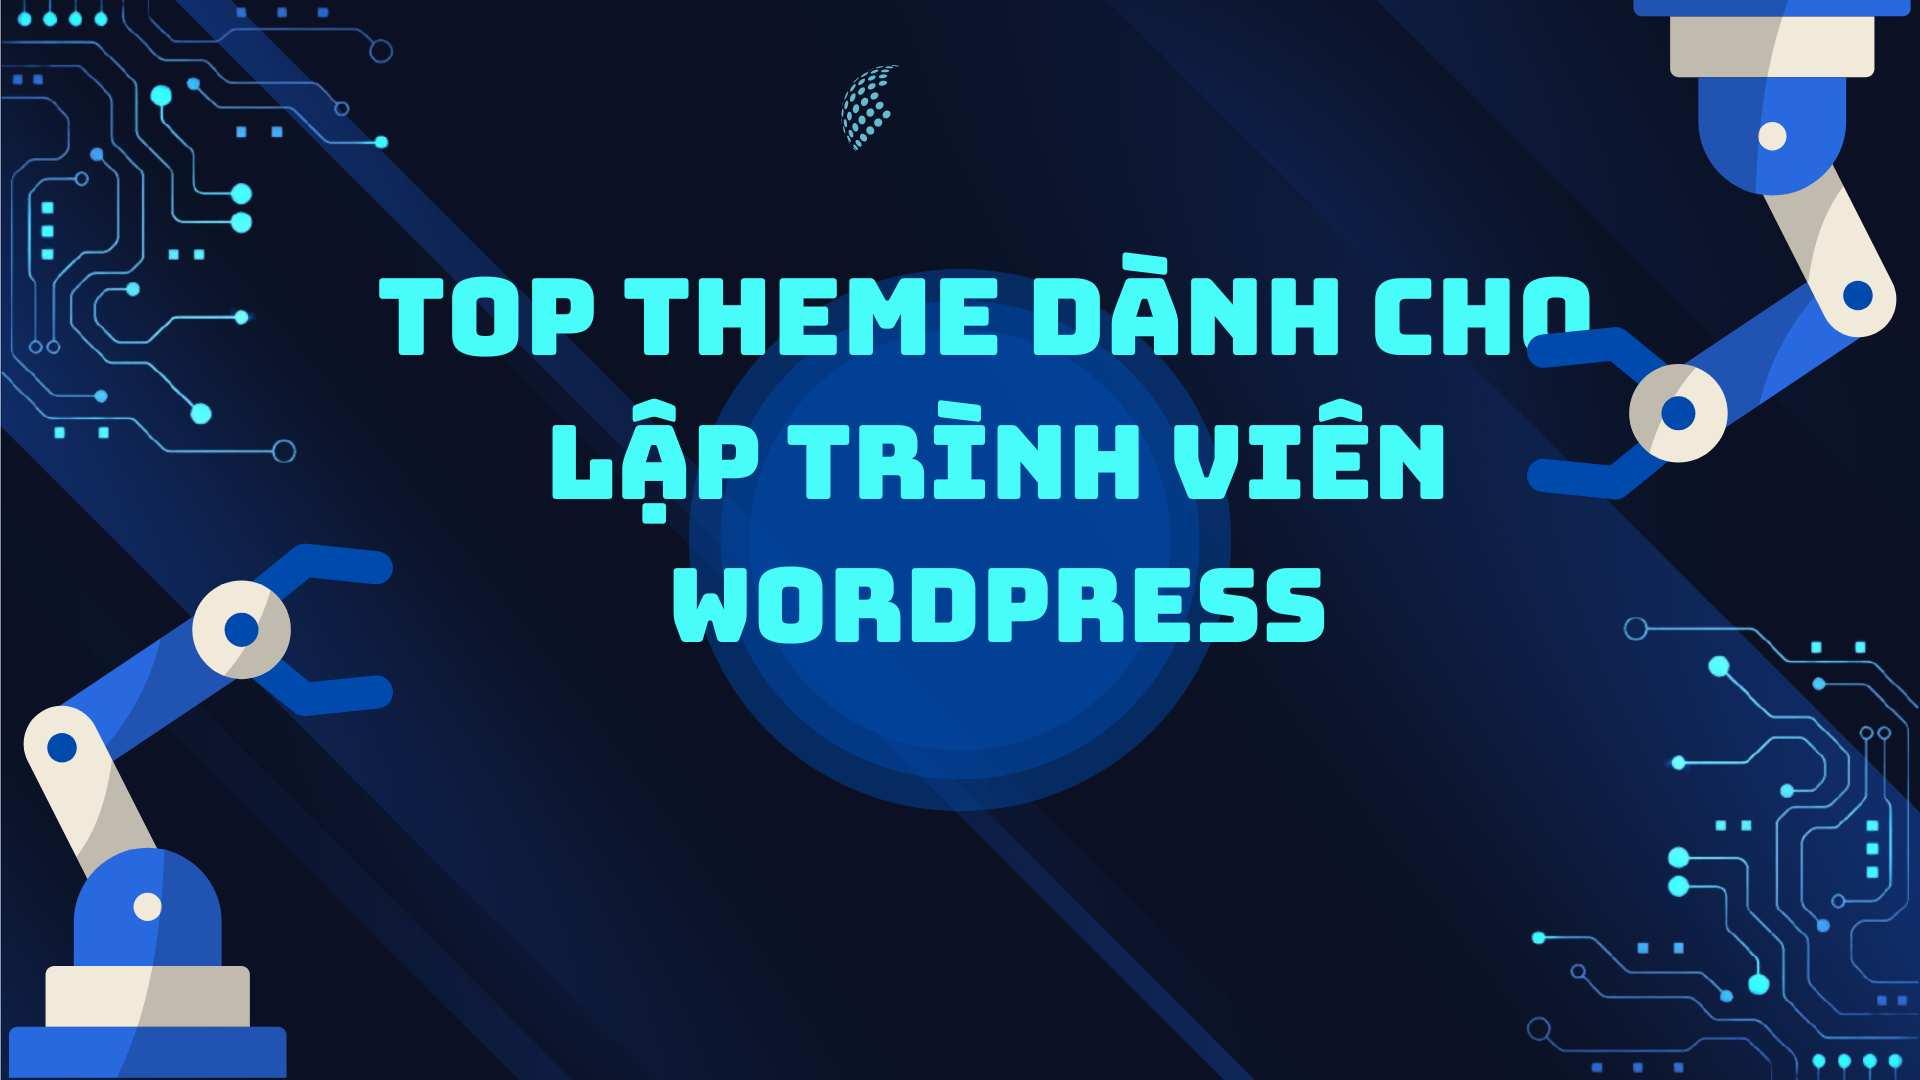 Top starter theme dành cho lập trình viên WordPress